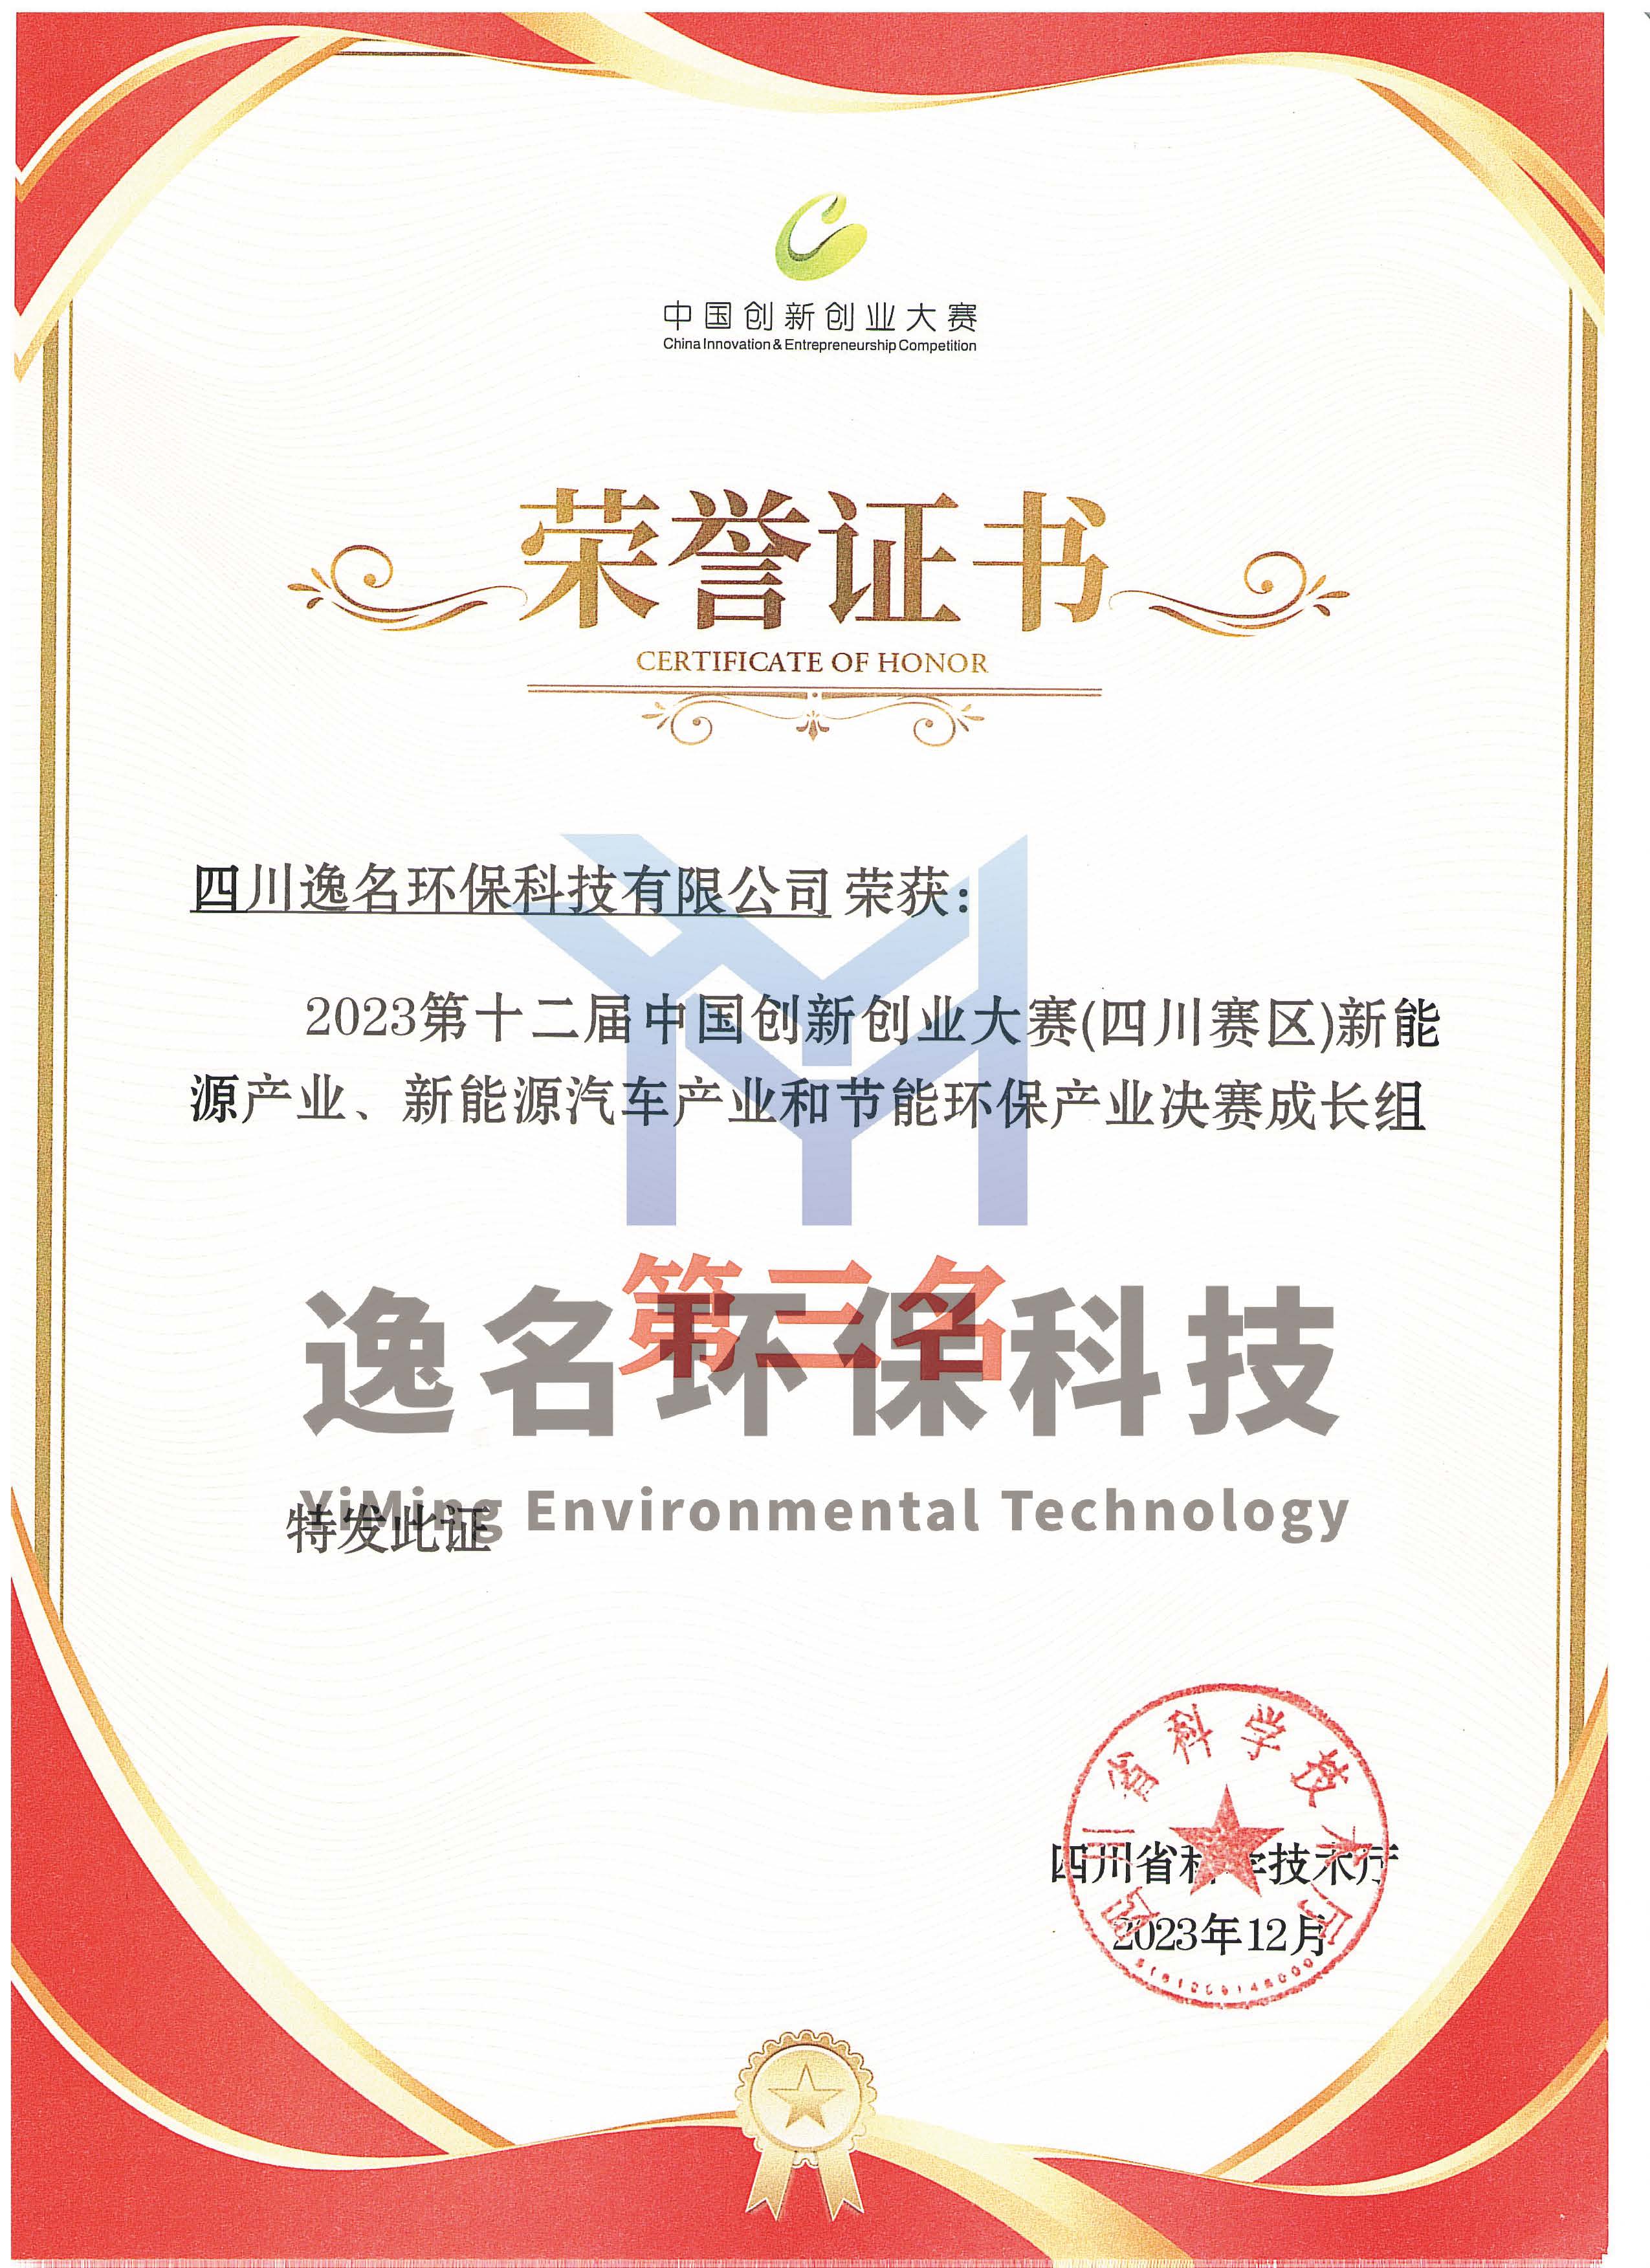 中国创新创业大赛荣誉证书